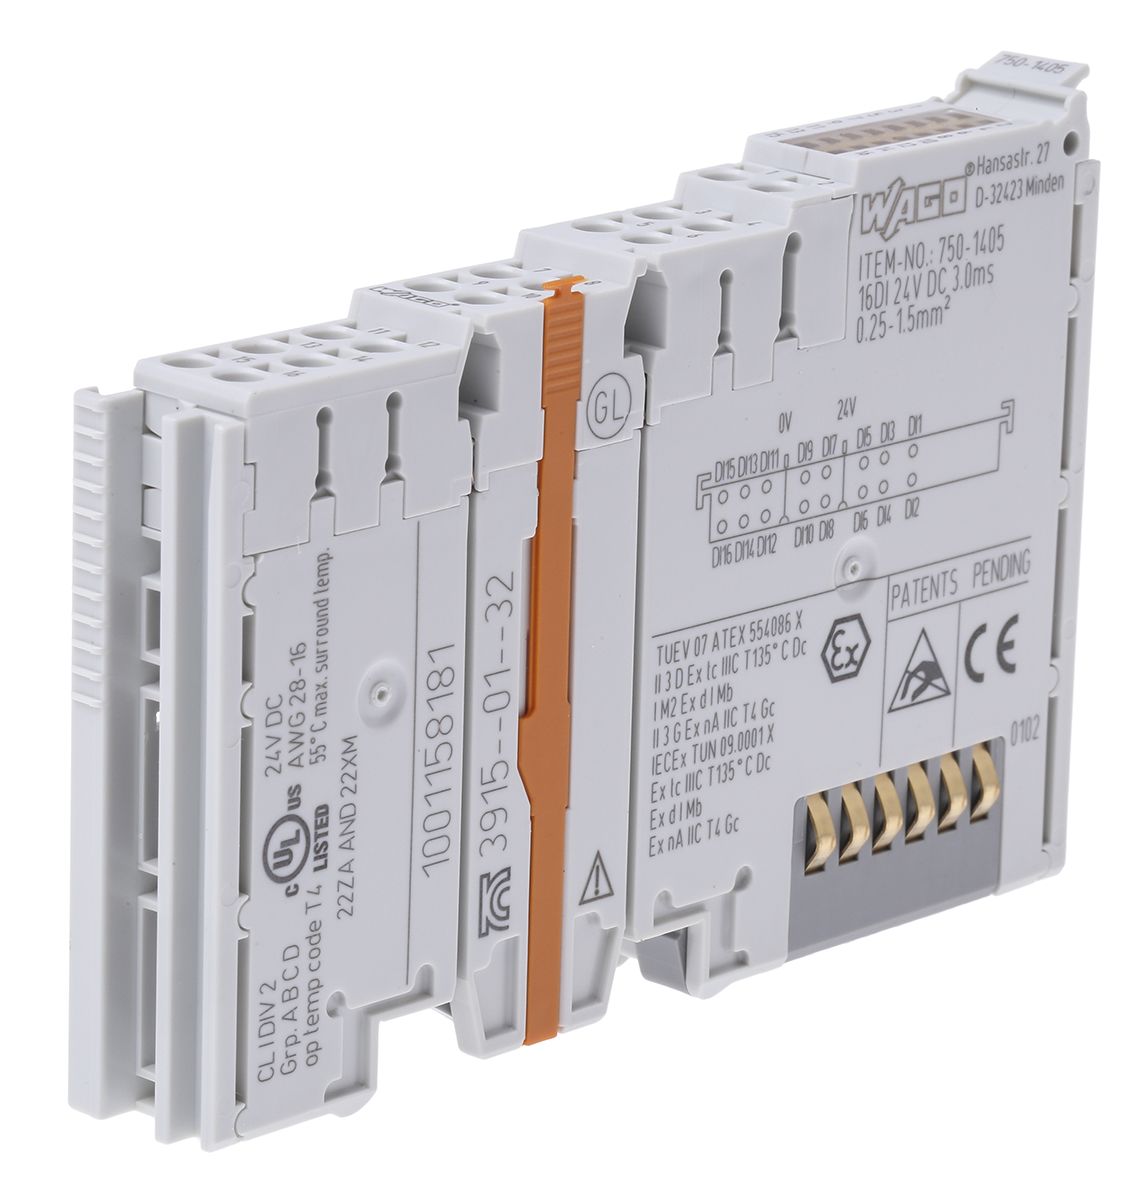 PLC – I/O modul, řada: Micro 800 pro Řada 750, 67 x 12 x 100 mm, typ vstupní: Digitální 16 (kanál) vstupů 24 V dc Wago